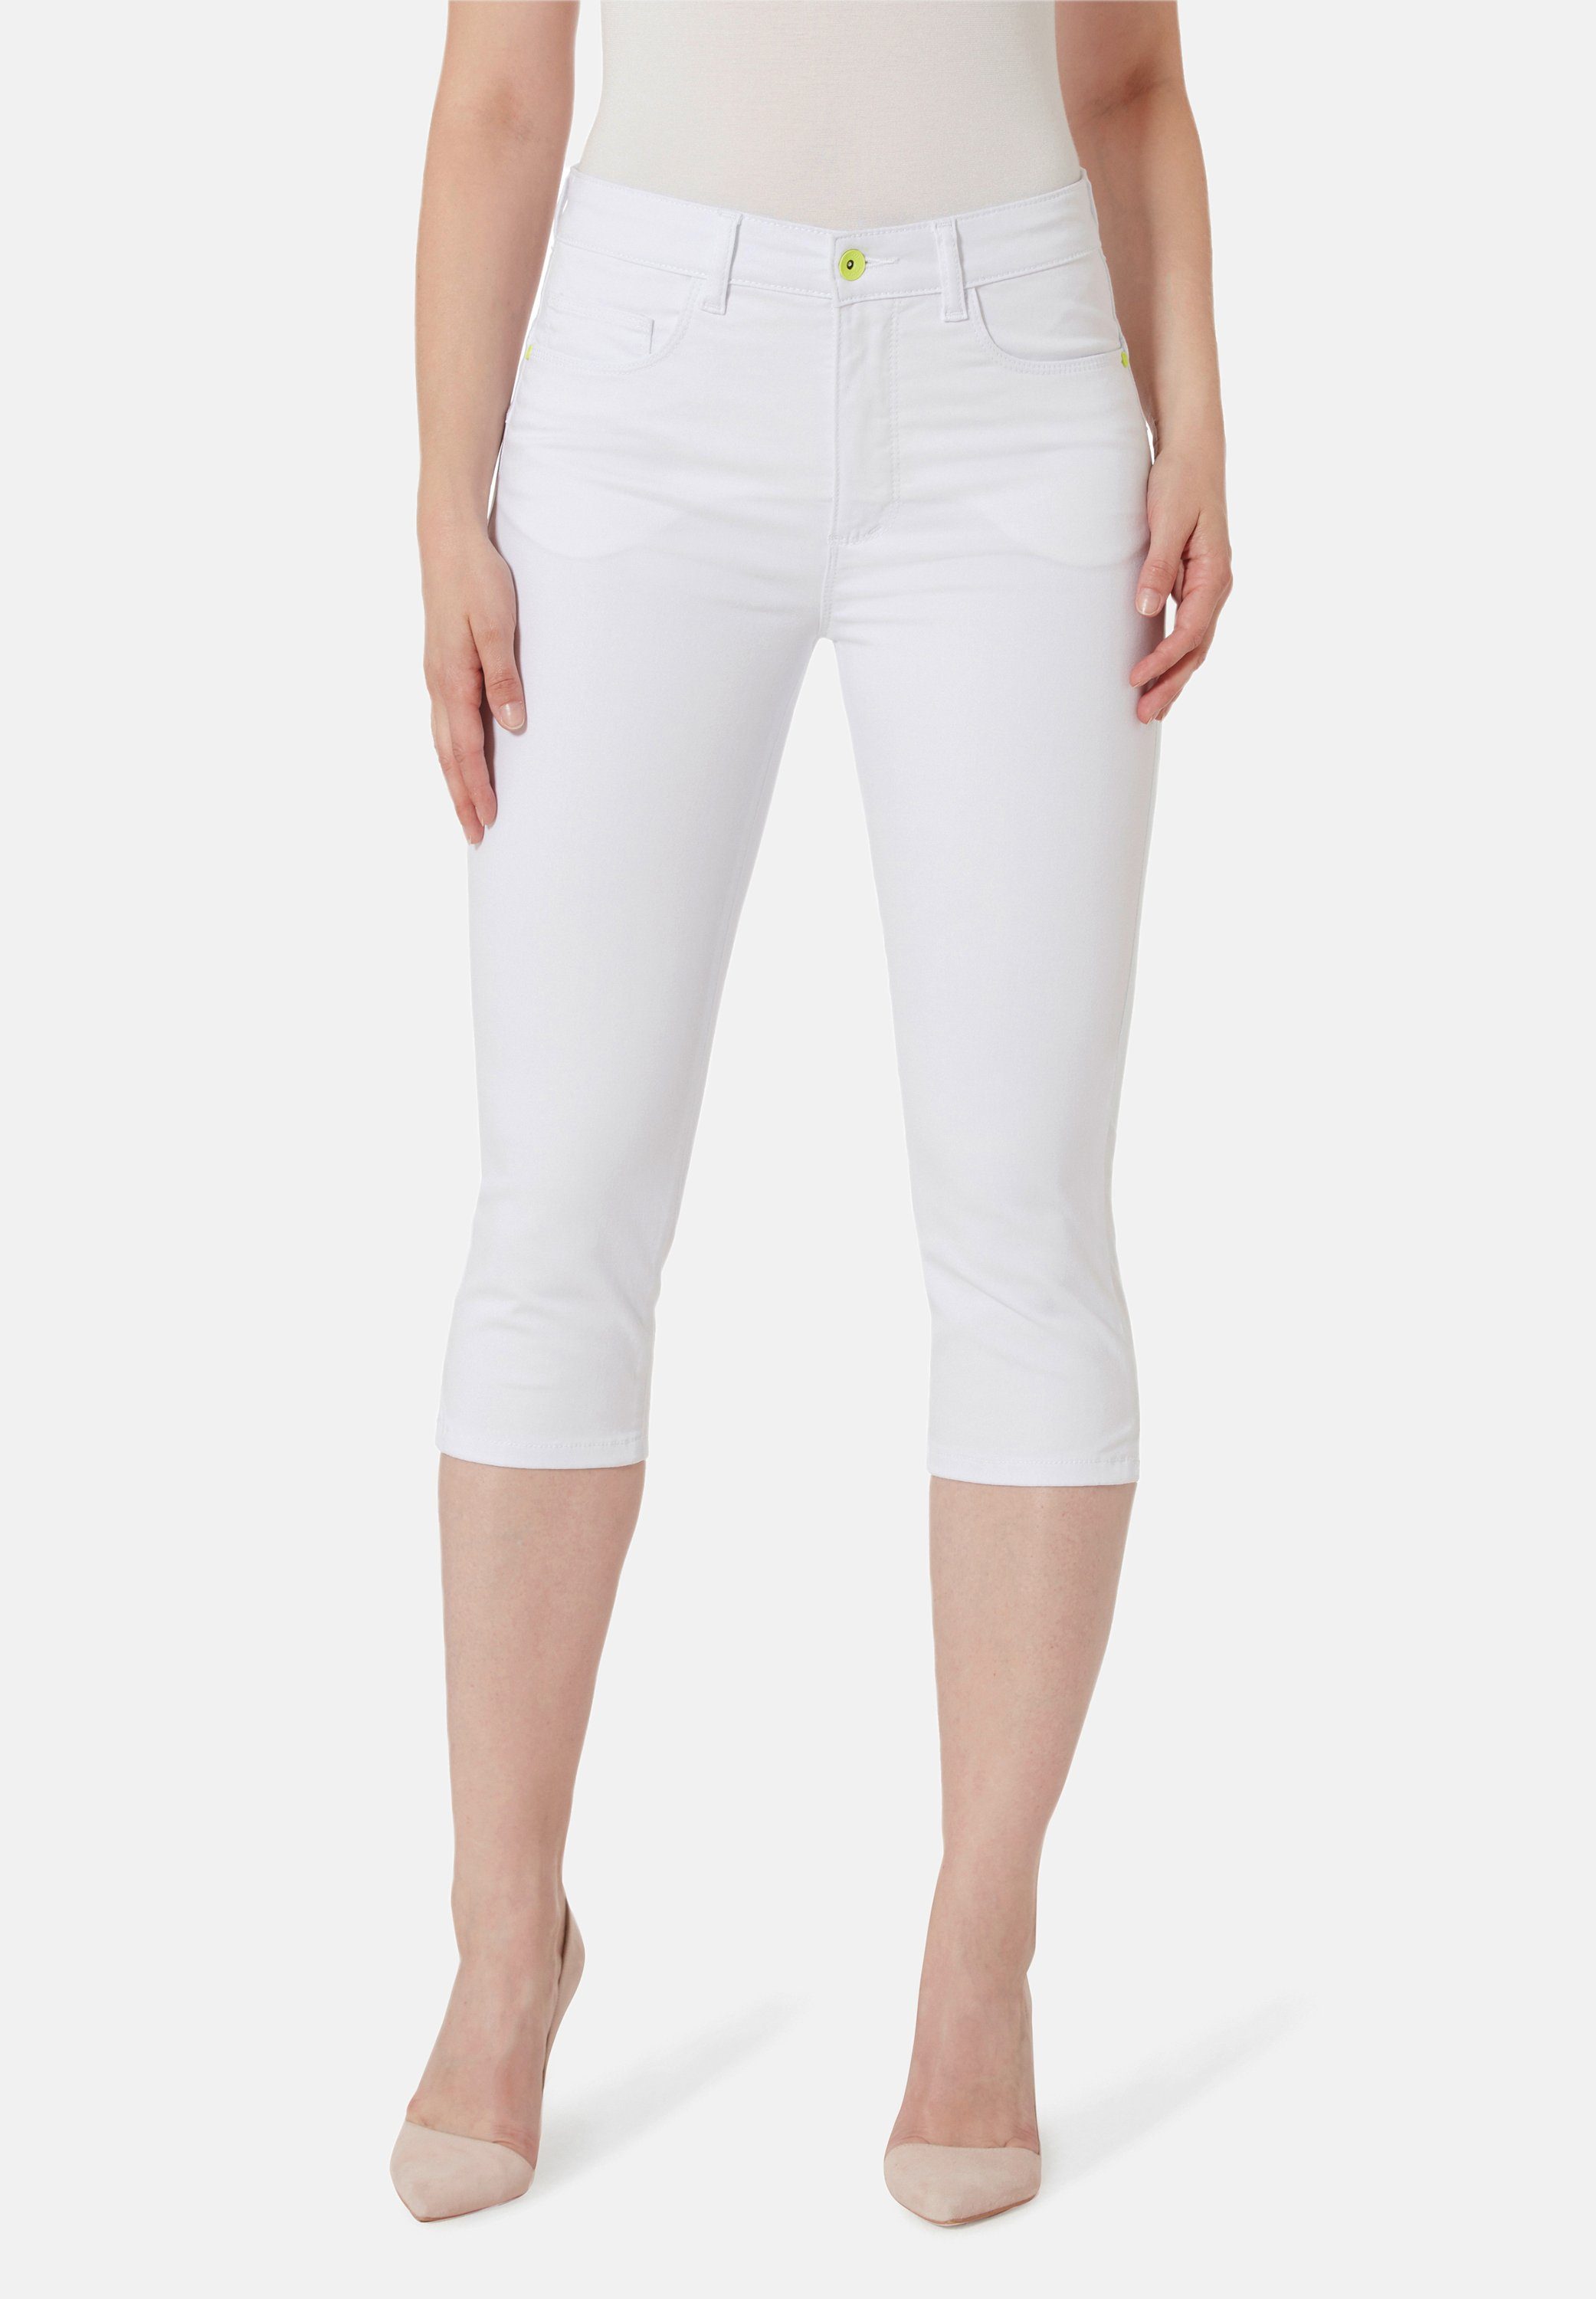 STOOKER WOMEN 7/8-Jeans Capri Denim Fit Skinny white